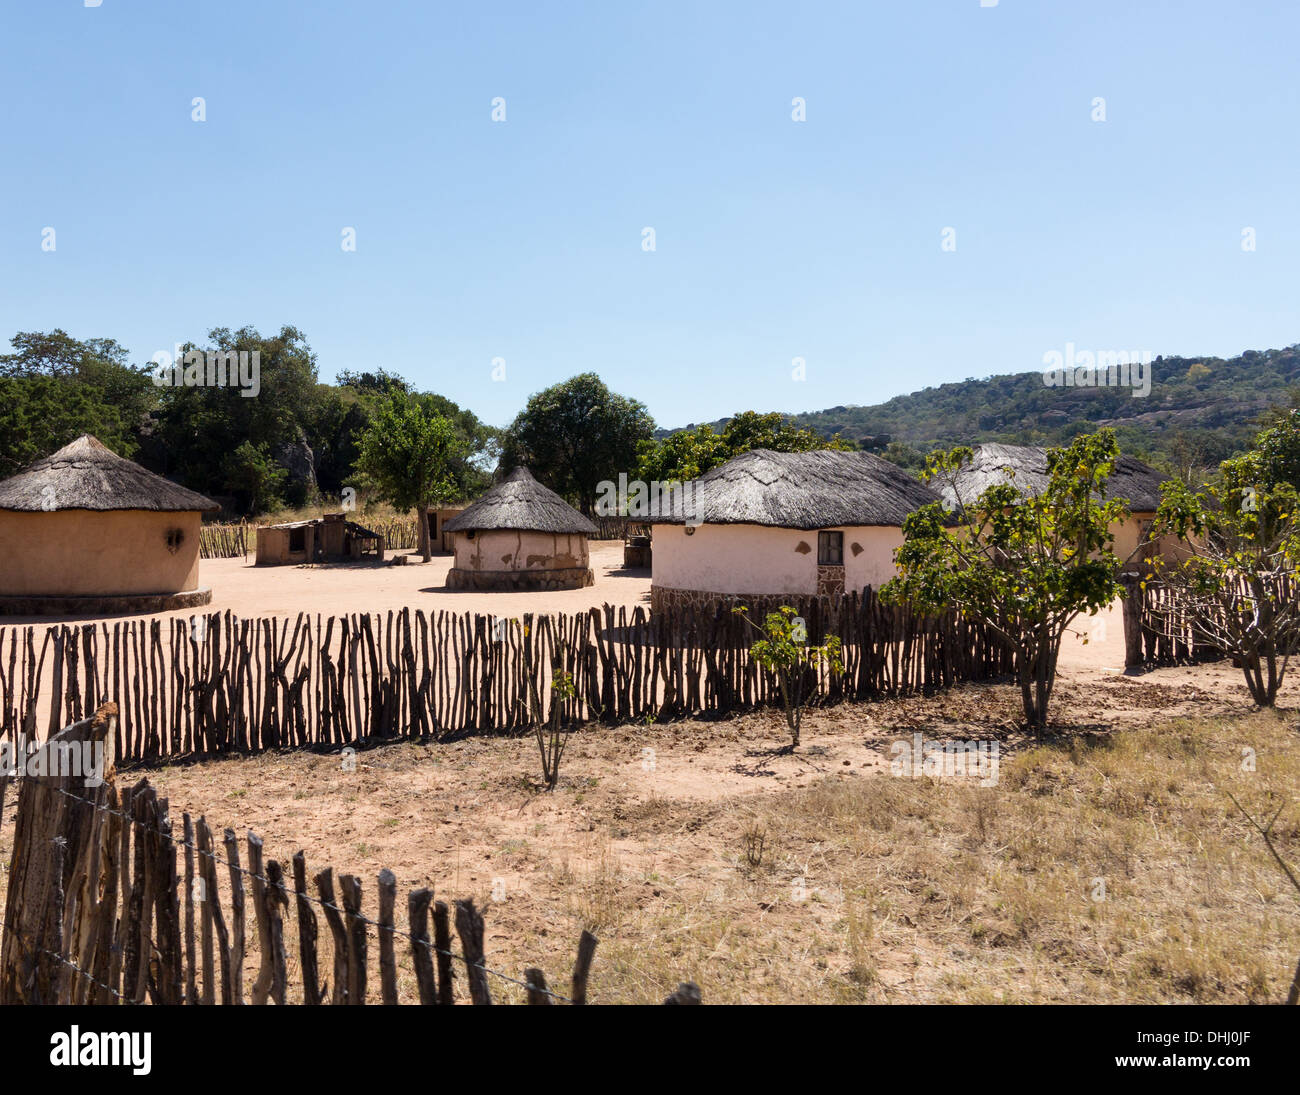 Vue sur les maisons de boue de chaume typique de village africain au Zimbabwe, l'Afrique Banque D'Images